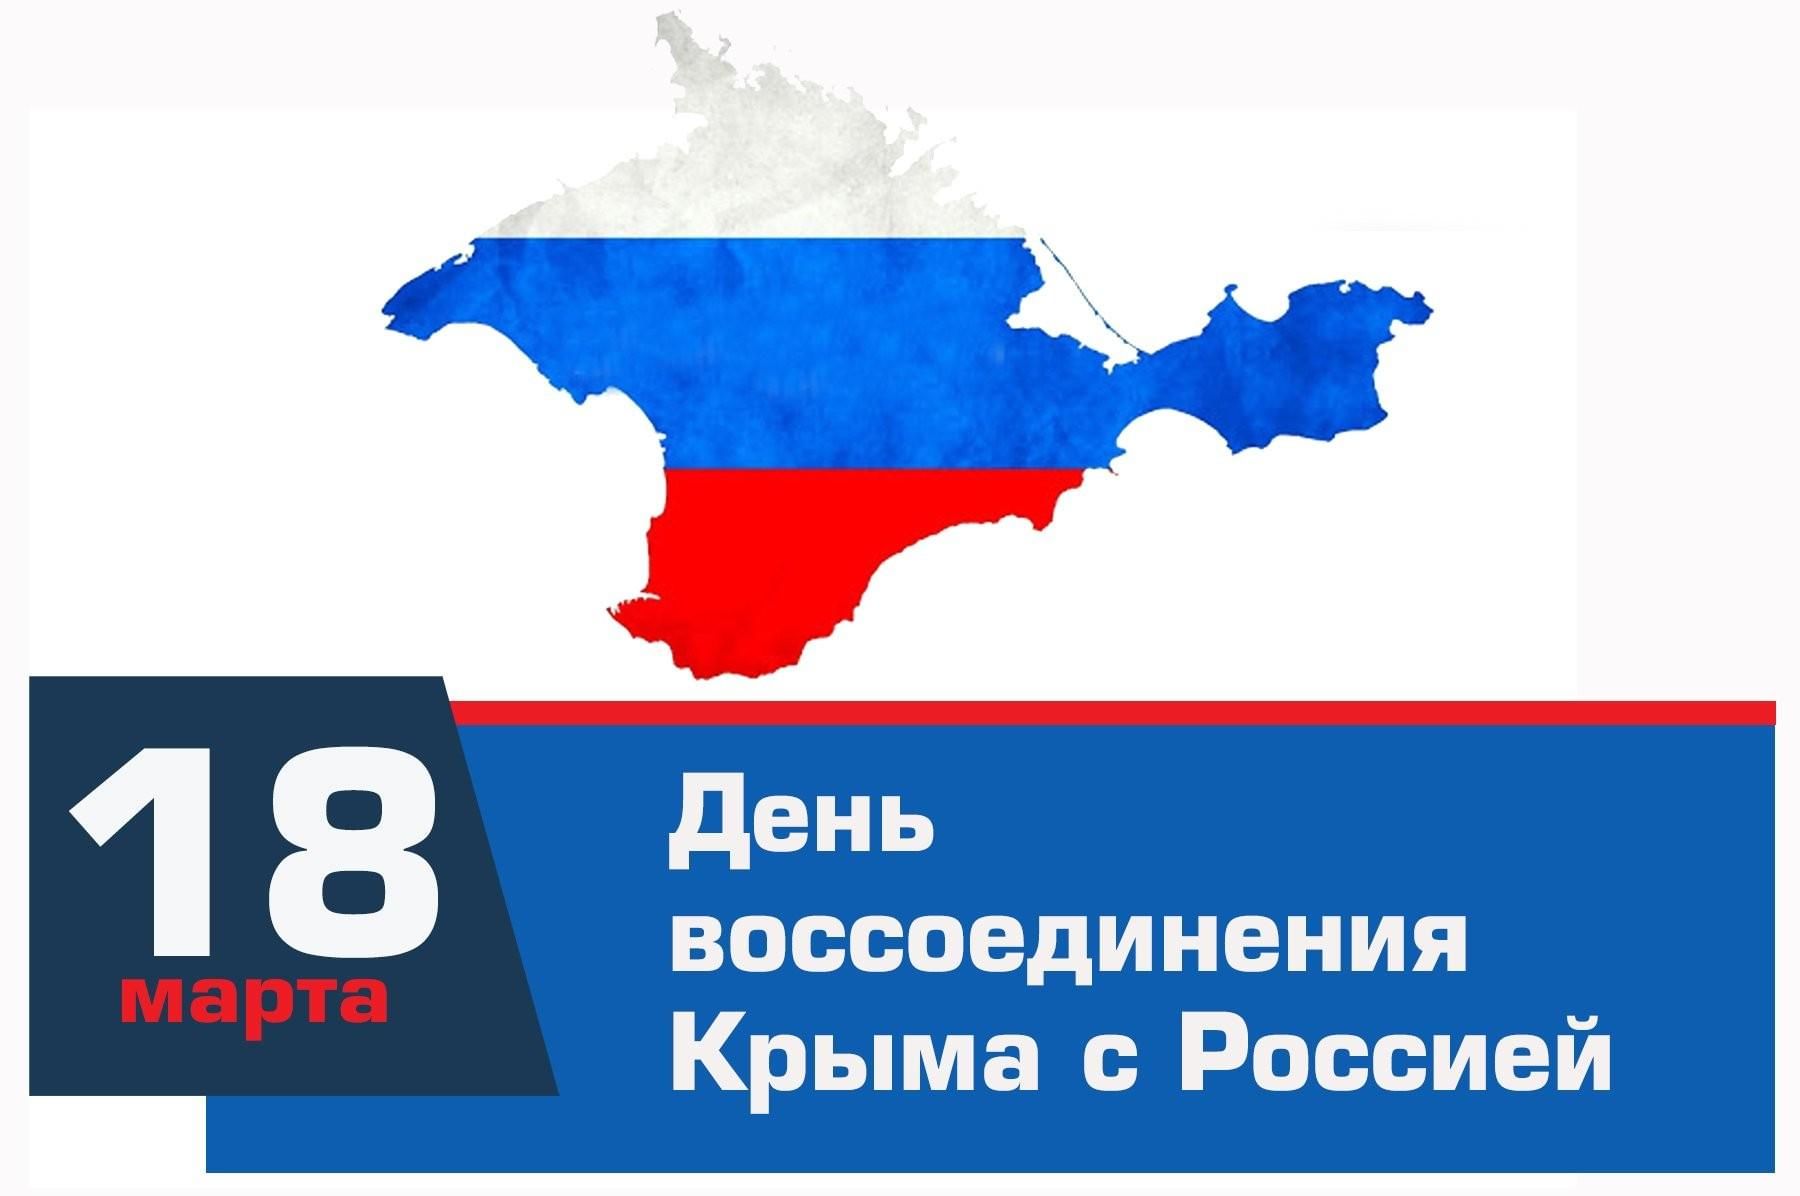 18 Марта воссоединение Крыма с Россией